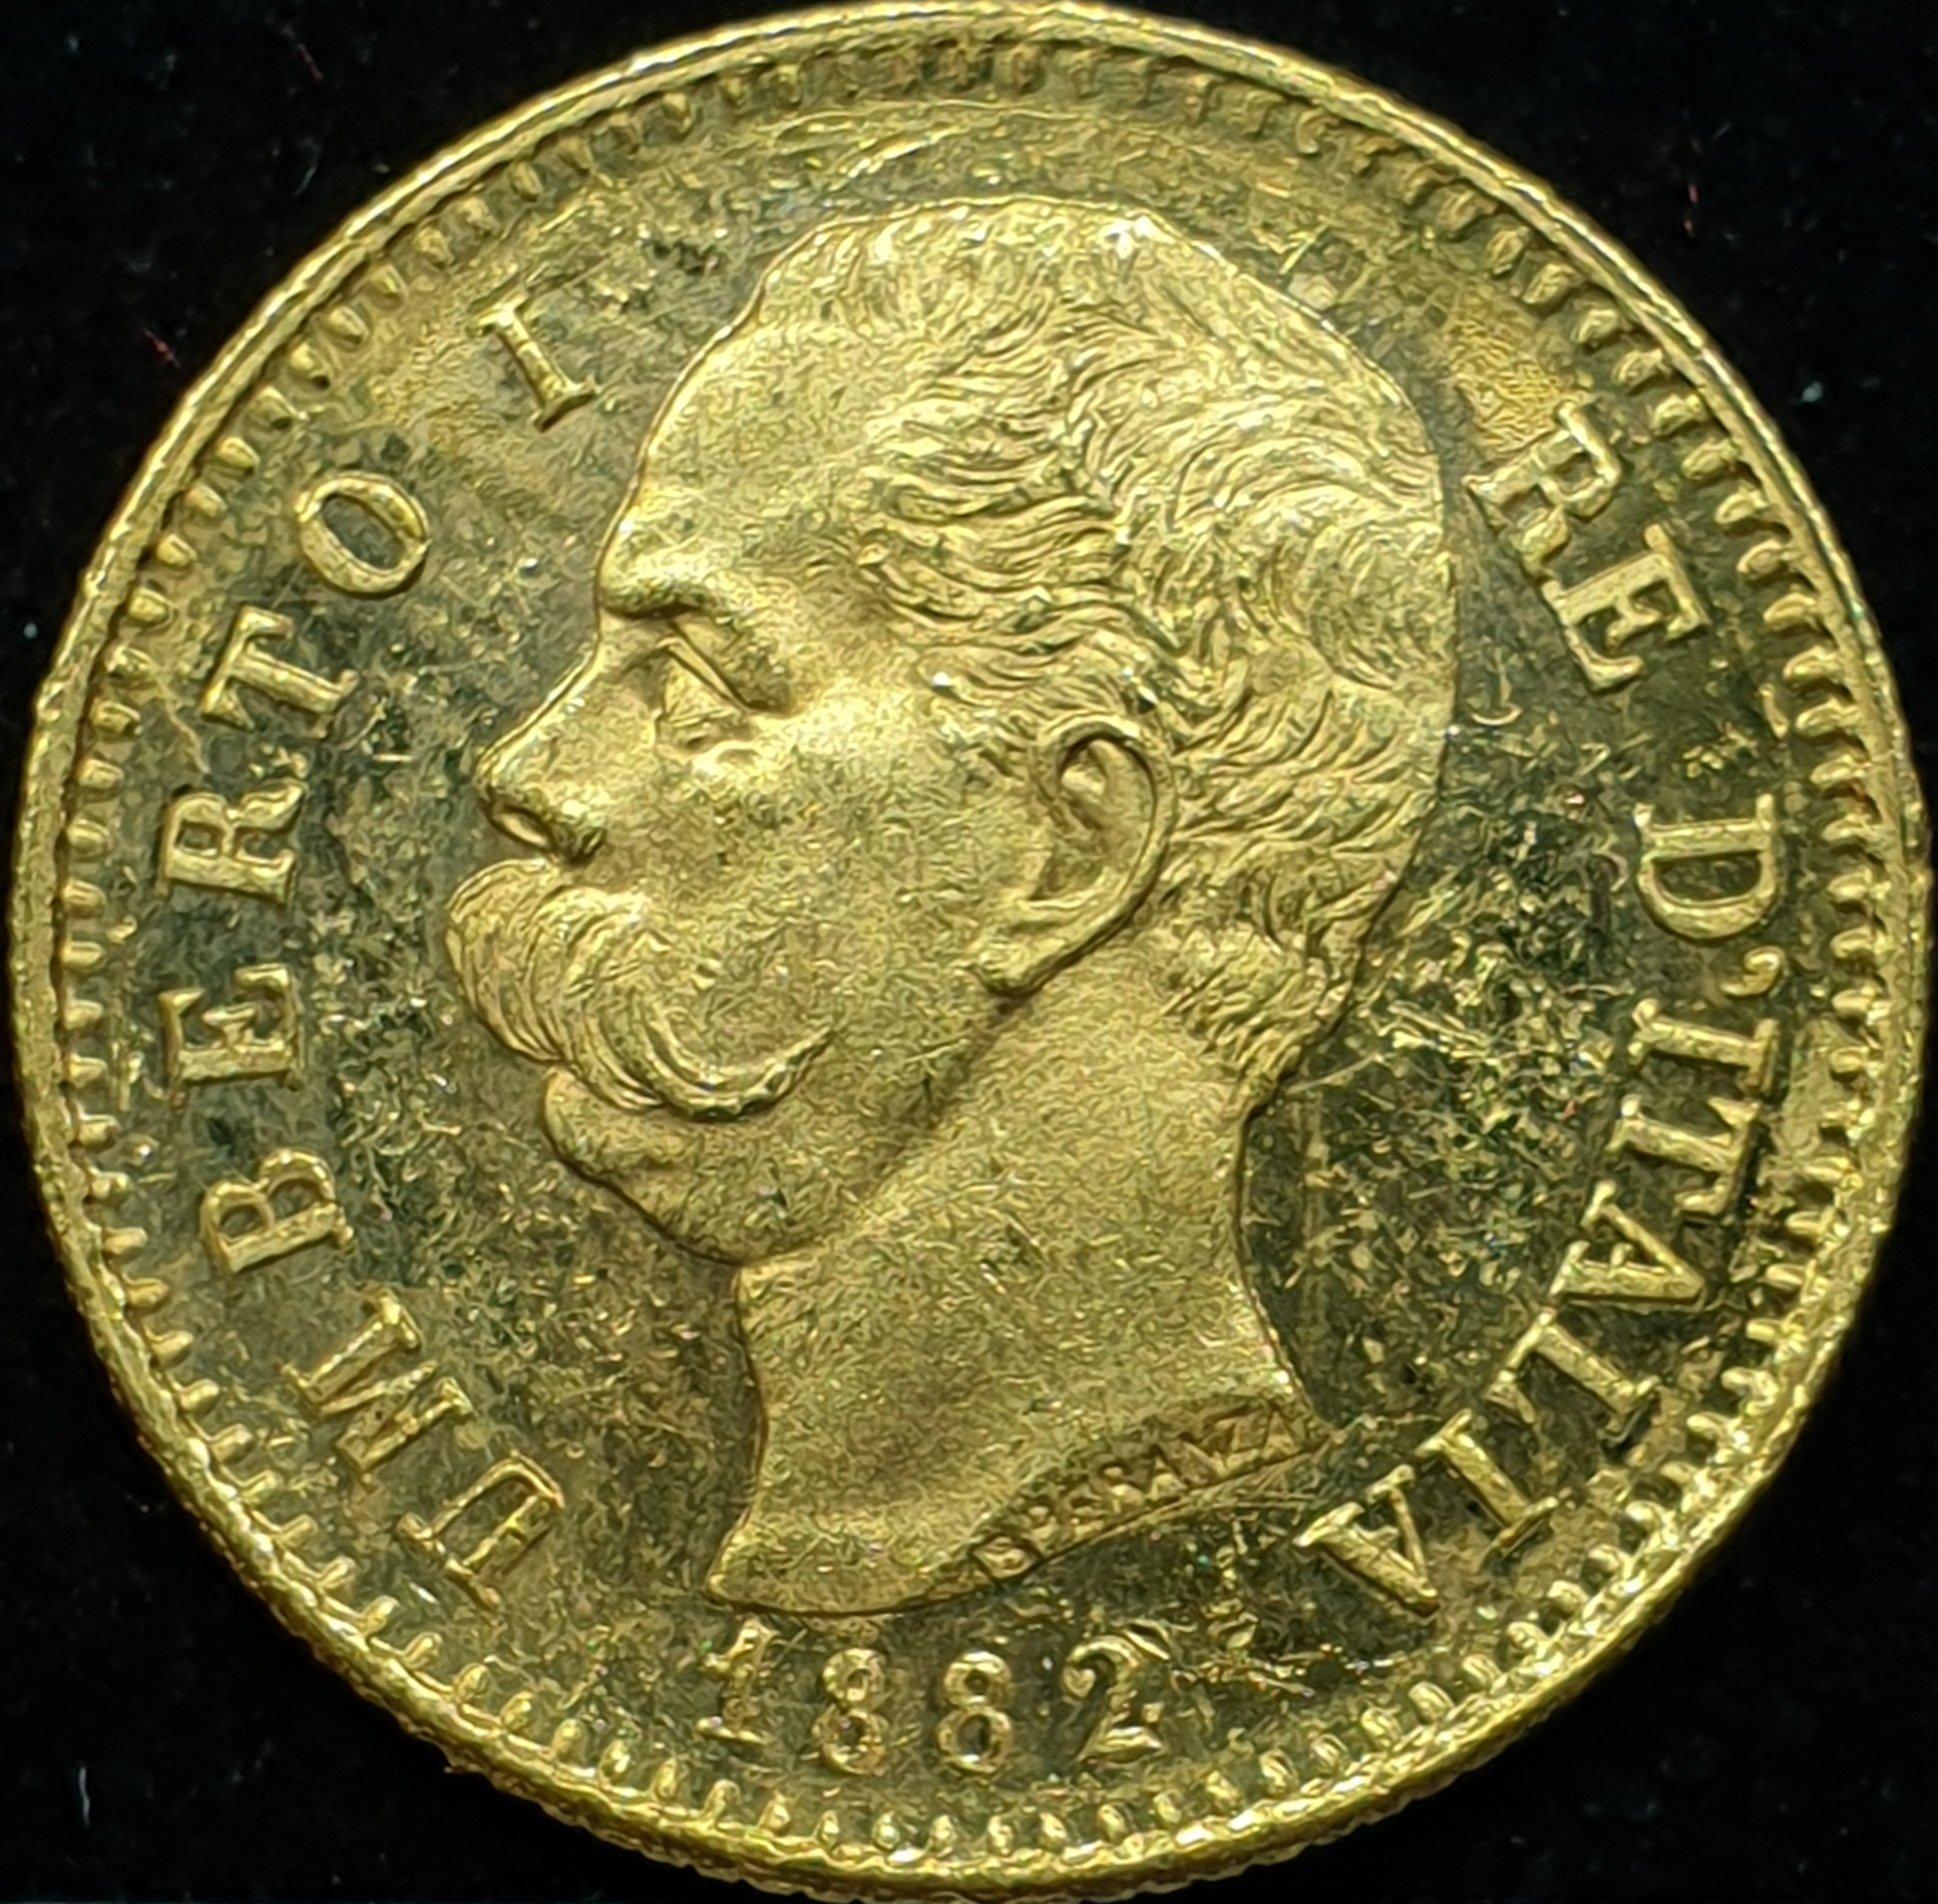 Italy - 20 Lire - 1882 - Umberto I